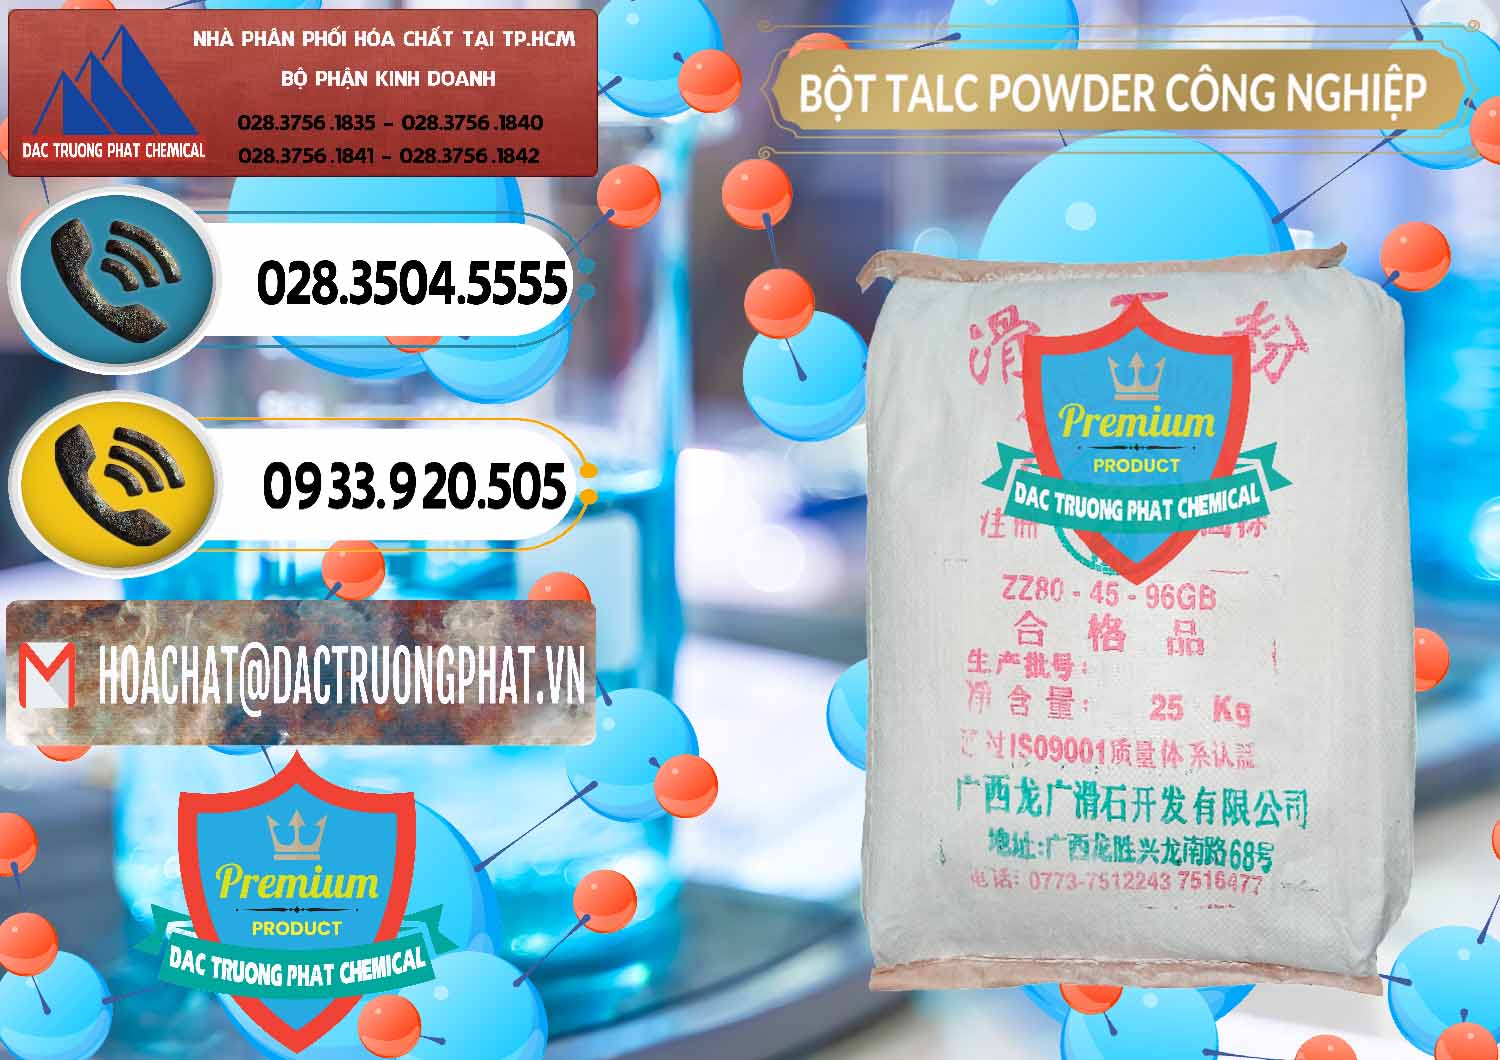 Cty chuyên kinh doanh & bán Bột Talc Powder Công Nghiệp Trung Quốc China - 0037 - Cty chuyên kinh doanh và phân phối hóa chất tại TP.HCM - hoachatdetnhuom.vn